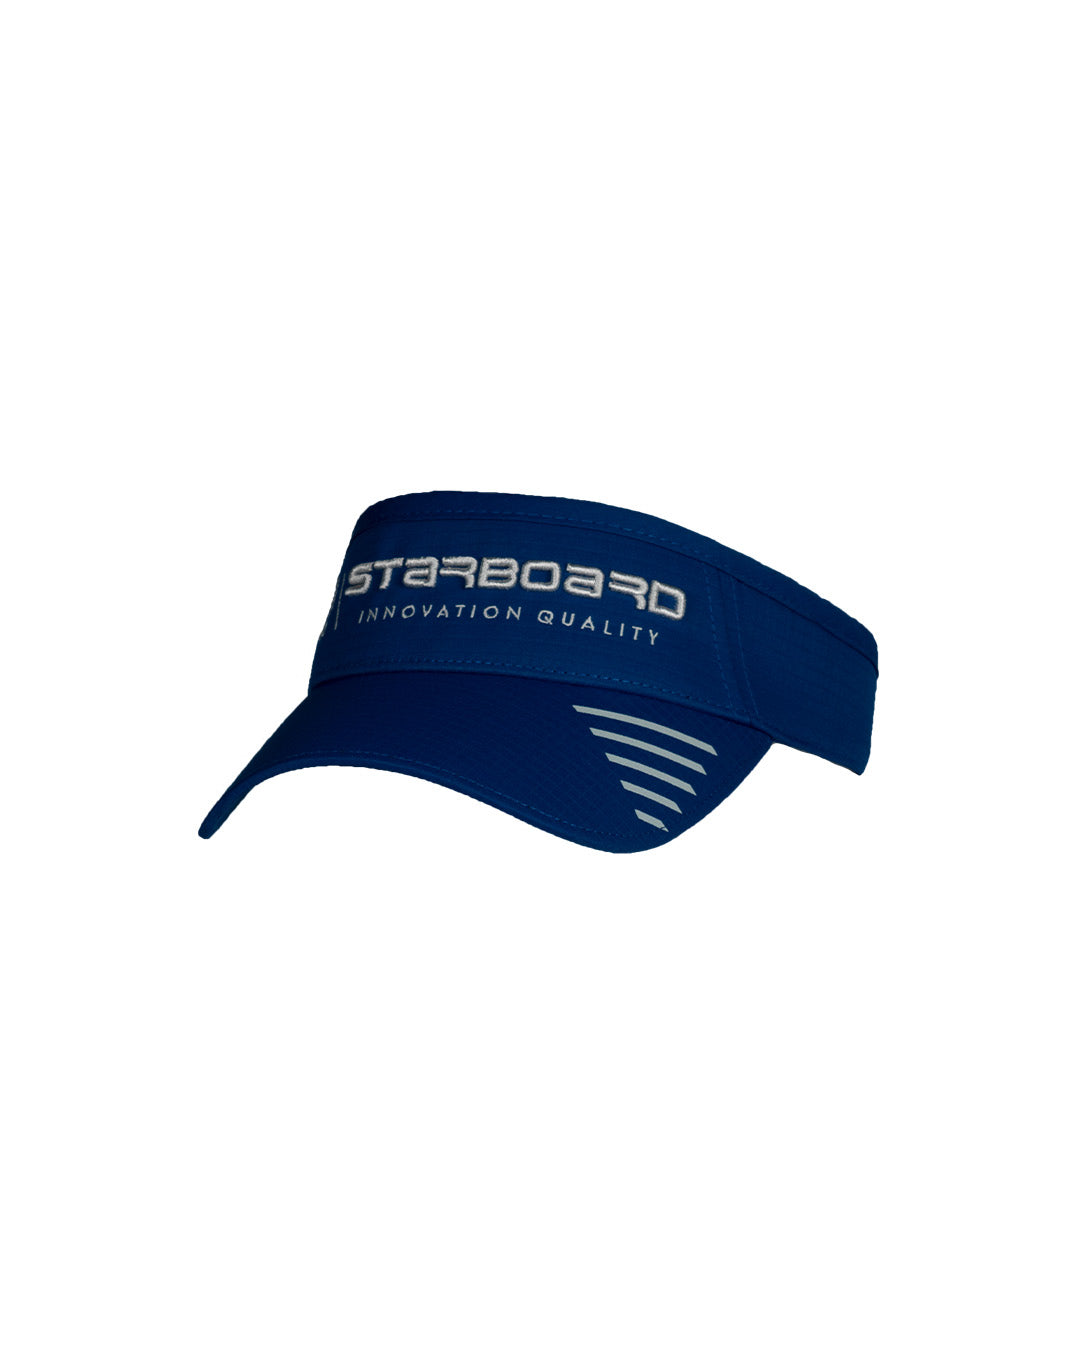 Starboard Performance Visor - Team Blue